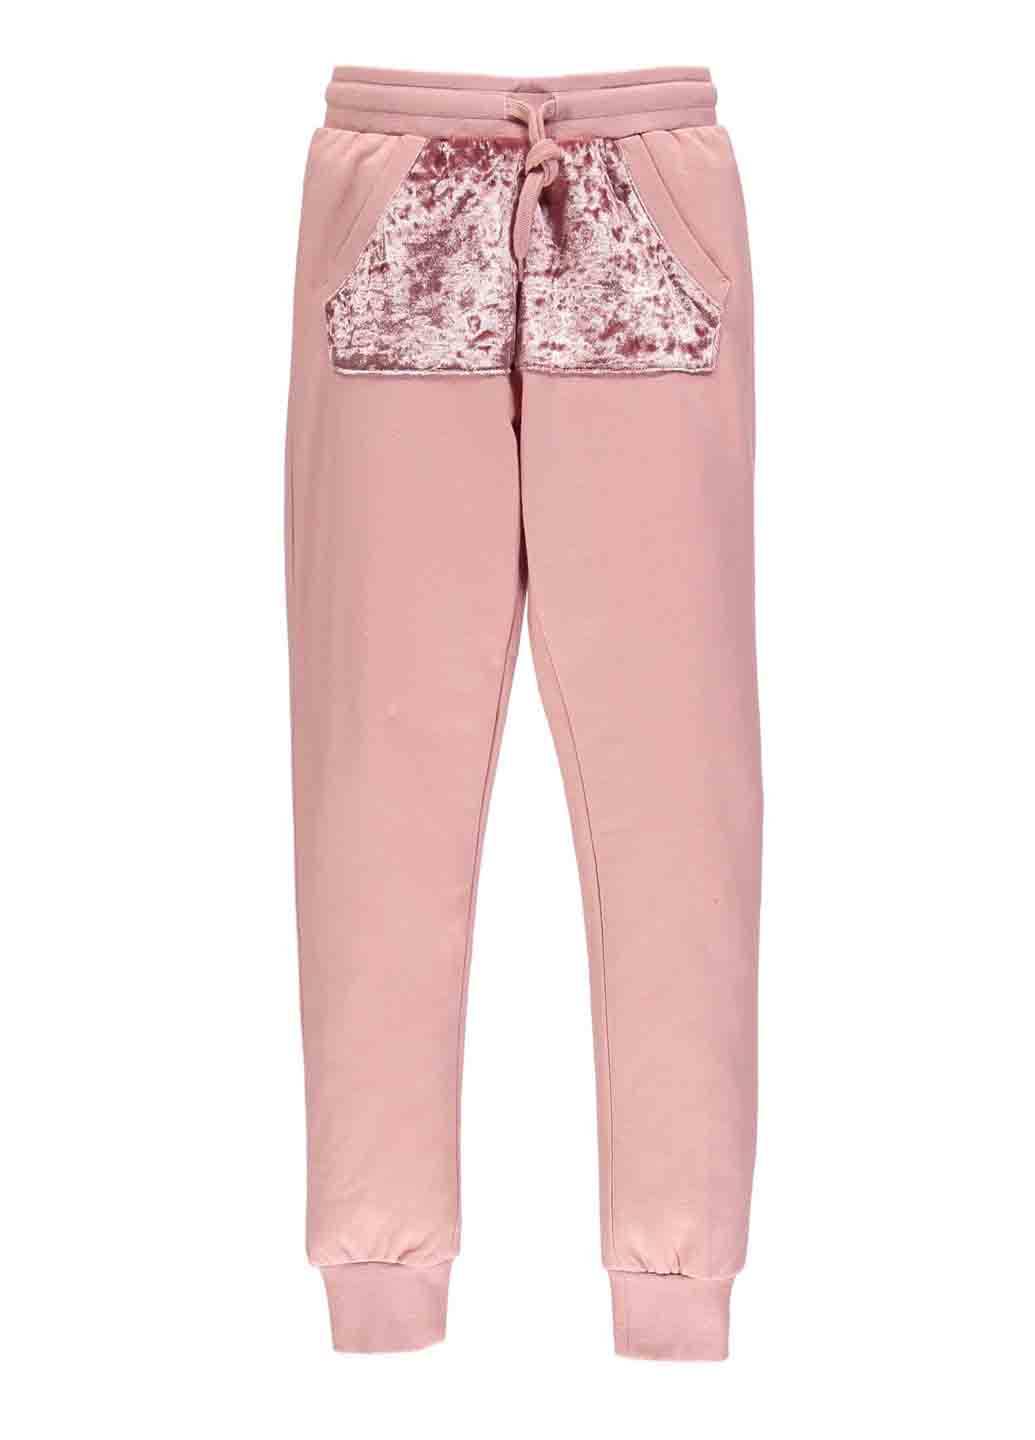 Розовый демисезонный костюм (толстовка, брюки) брючный MEK